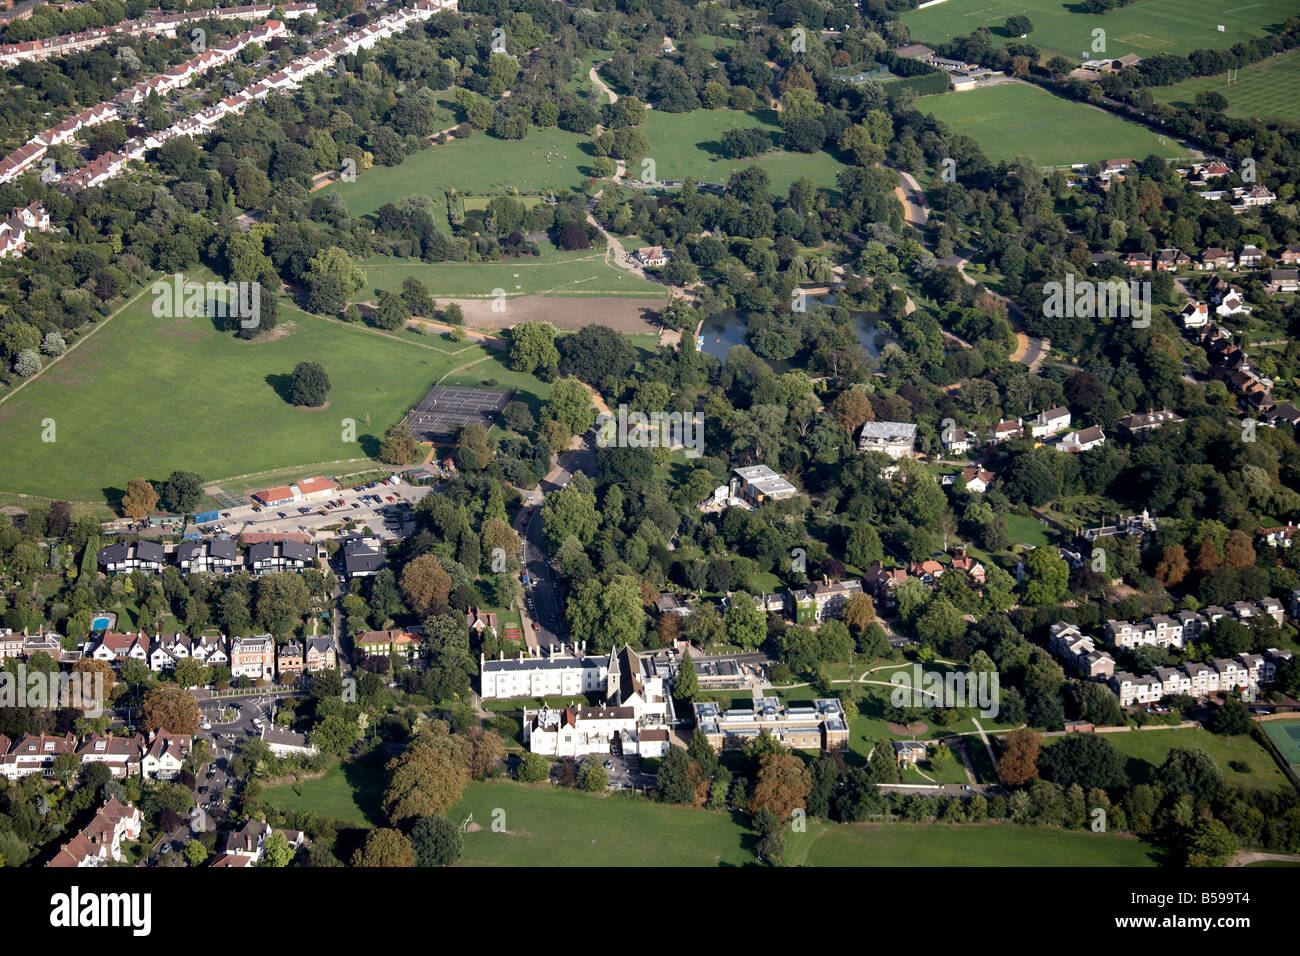 Luftbild östlich von Dulwich Park Bootfahren See Bild Galerie College Road College Road s beherbergt London SE21 England UK Stockfoto